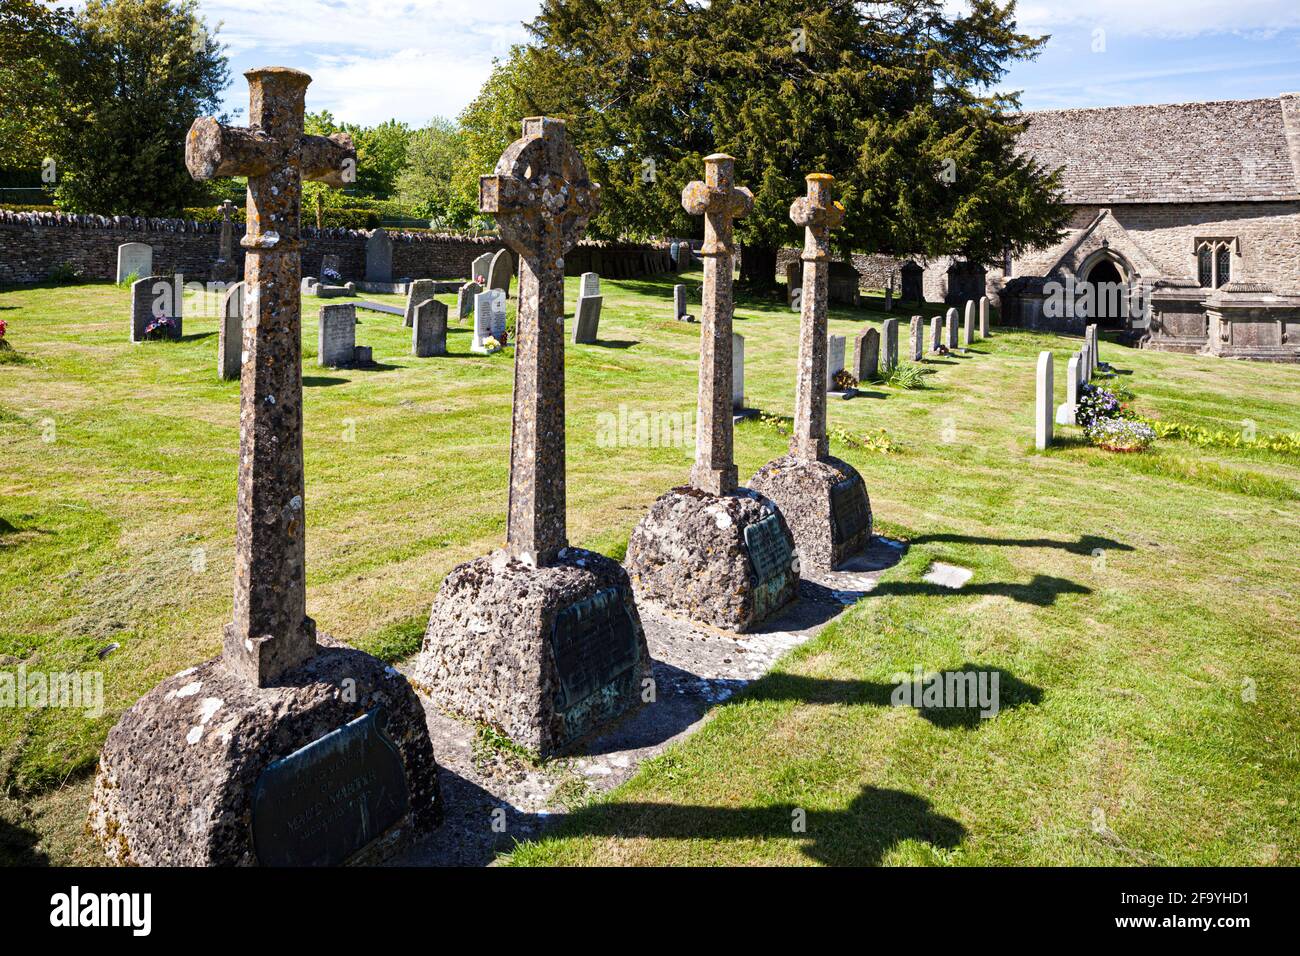 Eine Sammlung von Gedenkkreuzen auf dem Kirchhof der kleinen normannischen Kirche St. Michael im Cotswold-Dorf Winson, Gloucestershire, Großbritannien Stockfoto